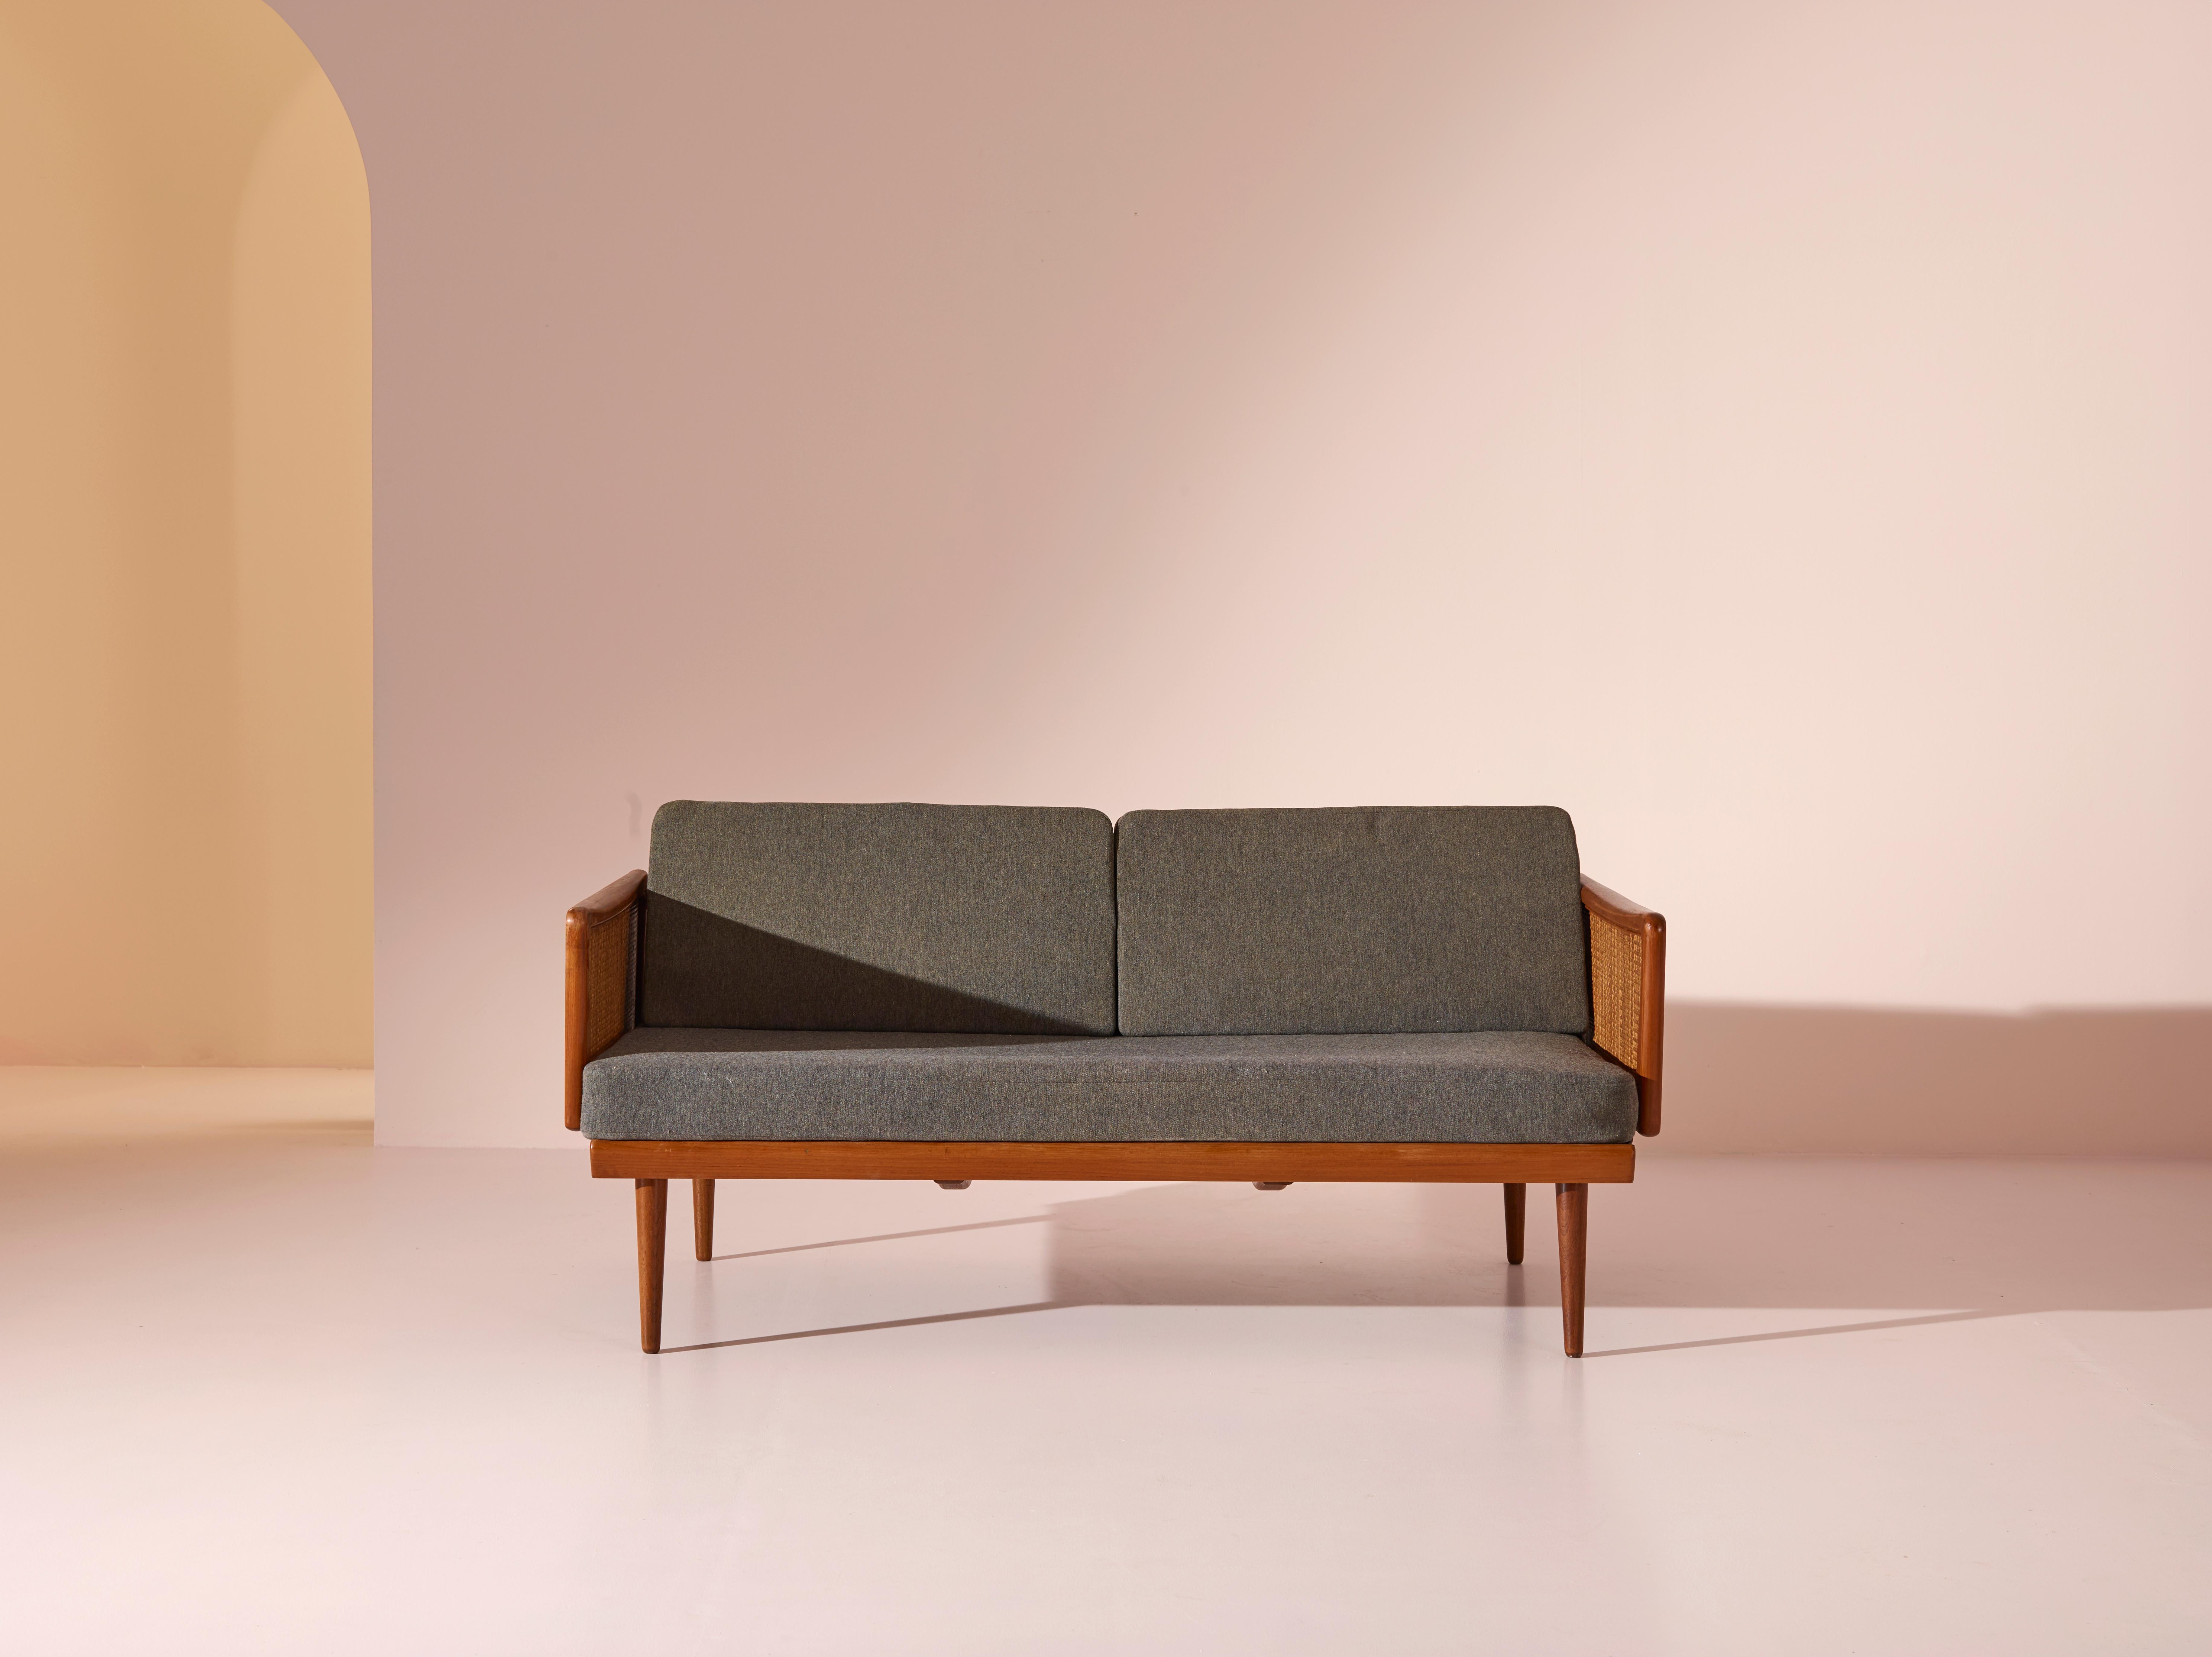 Magnifique canapé-lit articulé à deux places FD451, conçu par Peter Hvidt et Orla Mølgaard-Nielsen pour France & Søn au Danemark dans les années 1960.

L'une des caractéristiques intéressantes de ce canapé réside dans ses accoudoirs articulés, qui